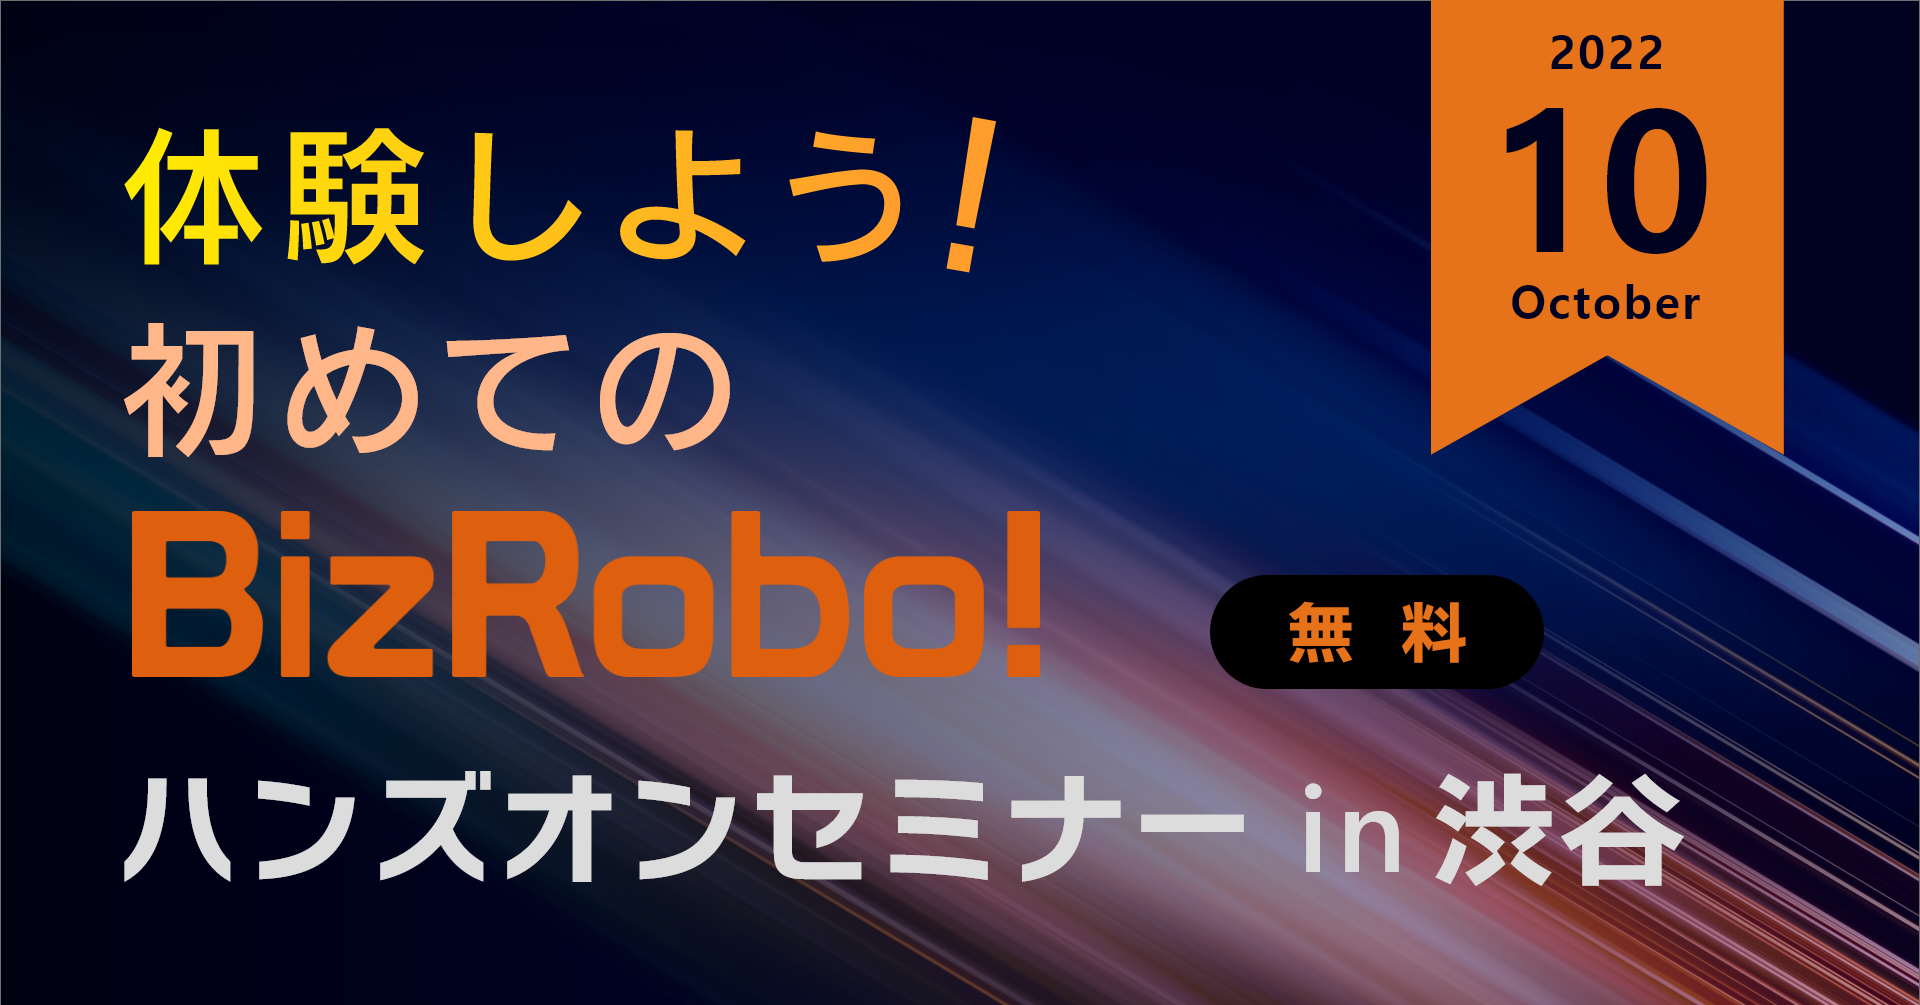 体験しよう！初めてのBizRobo! ハンズオンセミナー in 渋谷【10月】
